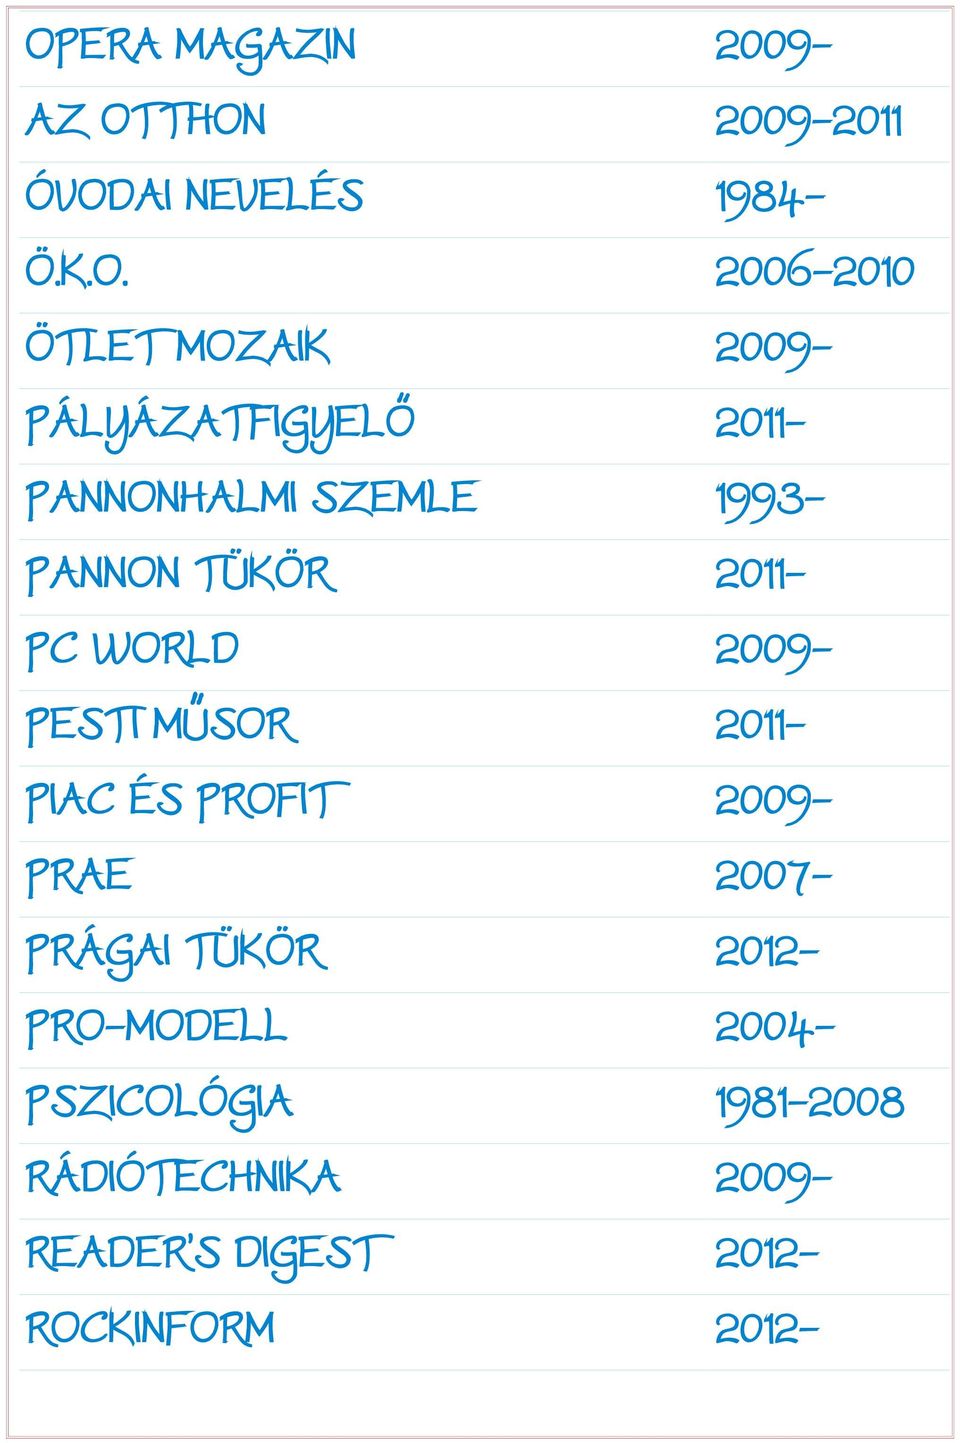 WORLD 2009- PESTI MŰSOR 2011- PIAC ÉS PROFIT 2009- PRAE 2007- PRÁGAI TÜKÖR 2012-